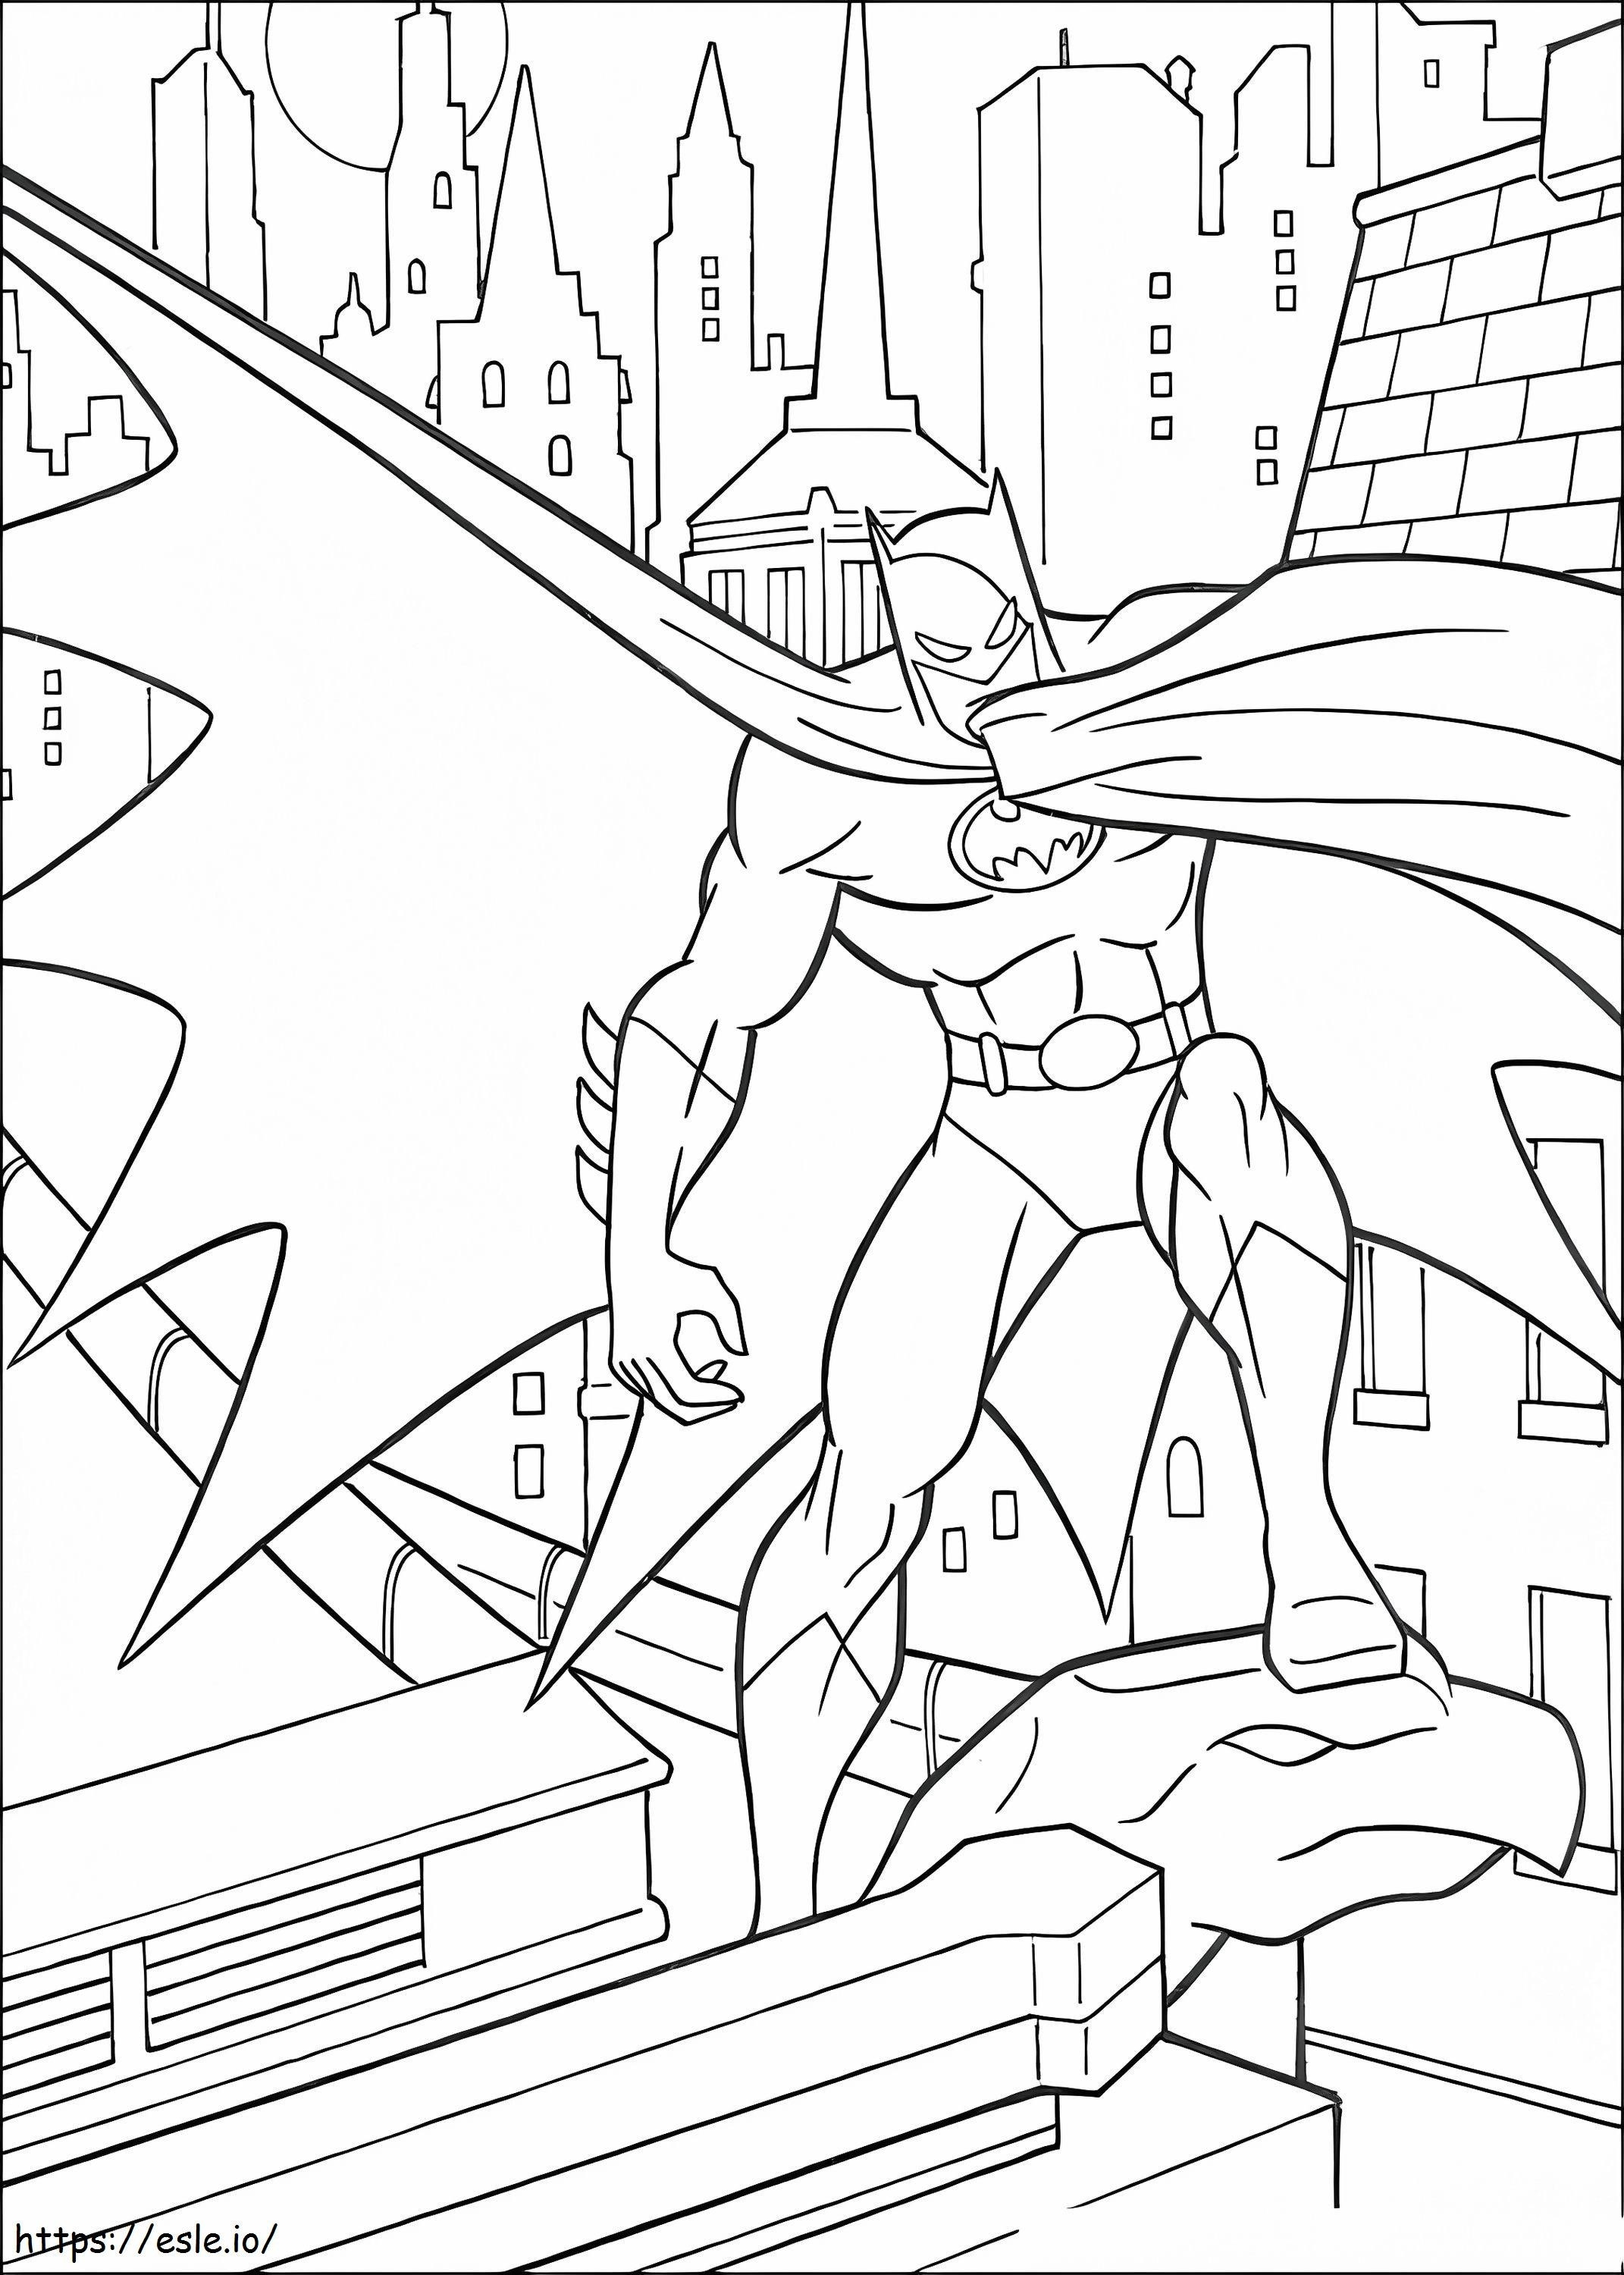 Coloriage Batman gratuit à imprimer dessin